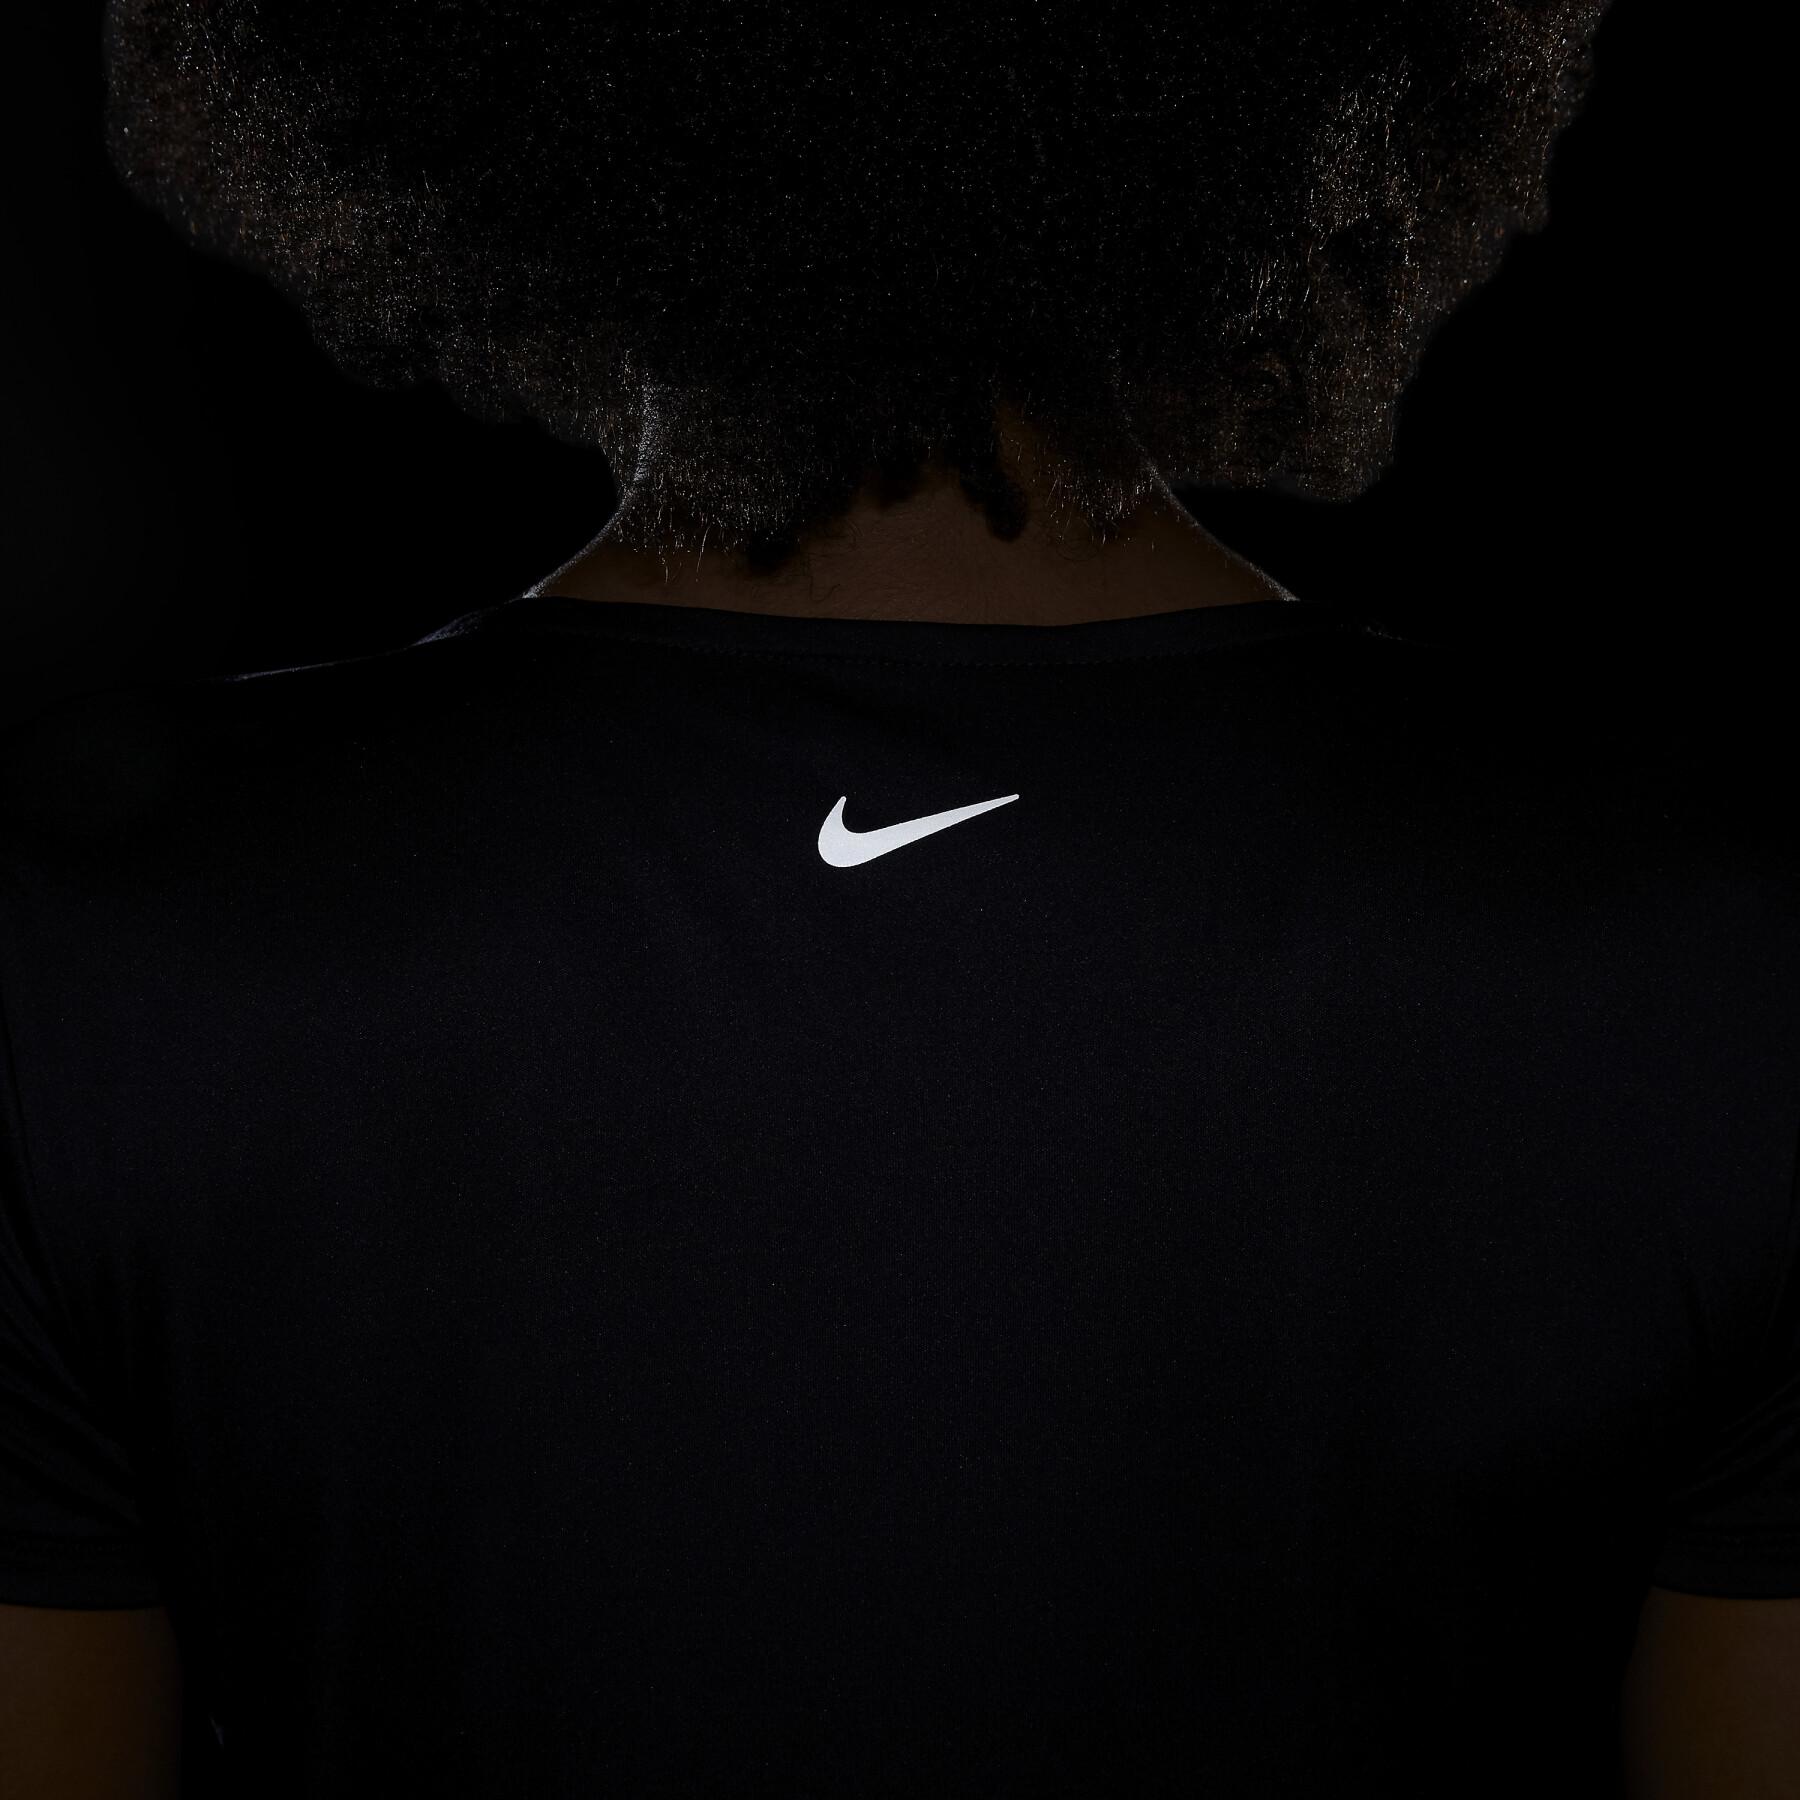 Maglietta da donna Nike Swoosh Run